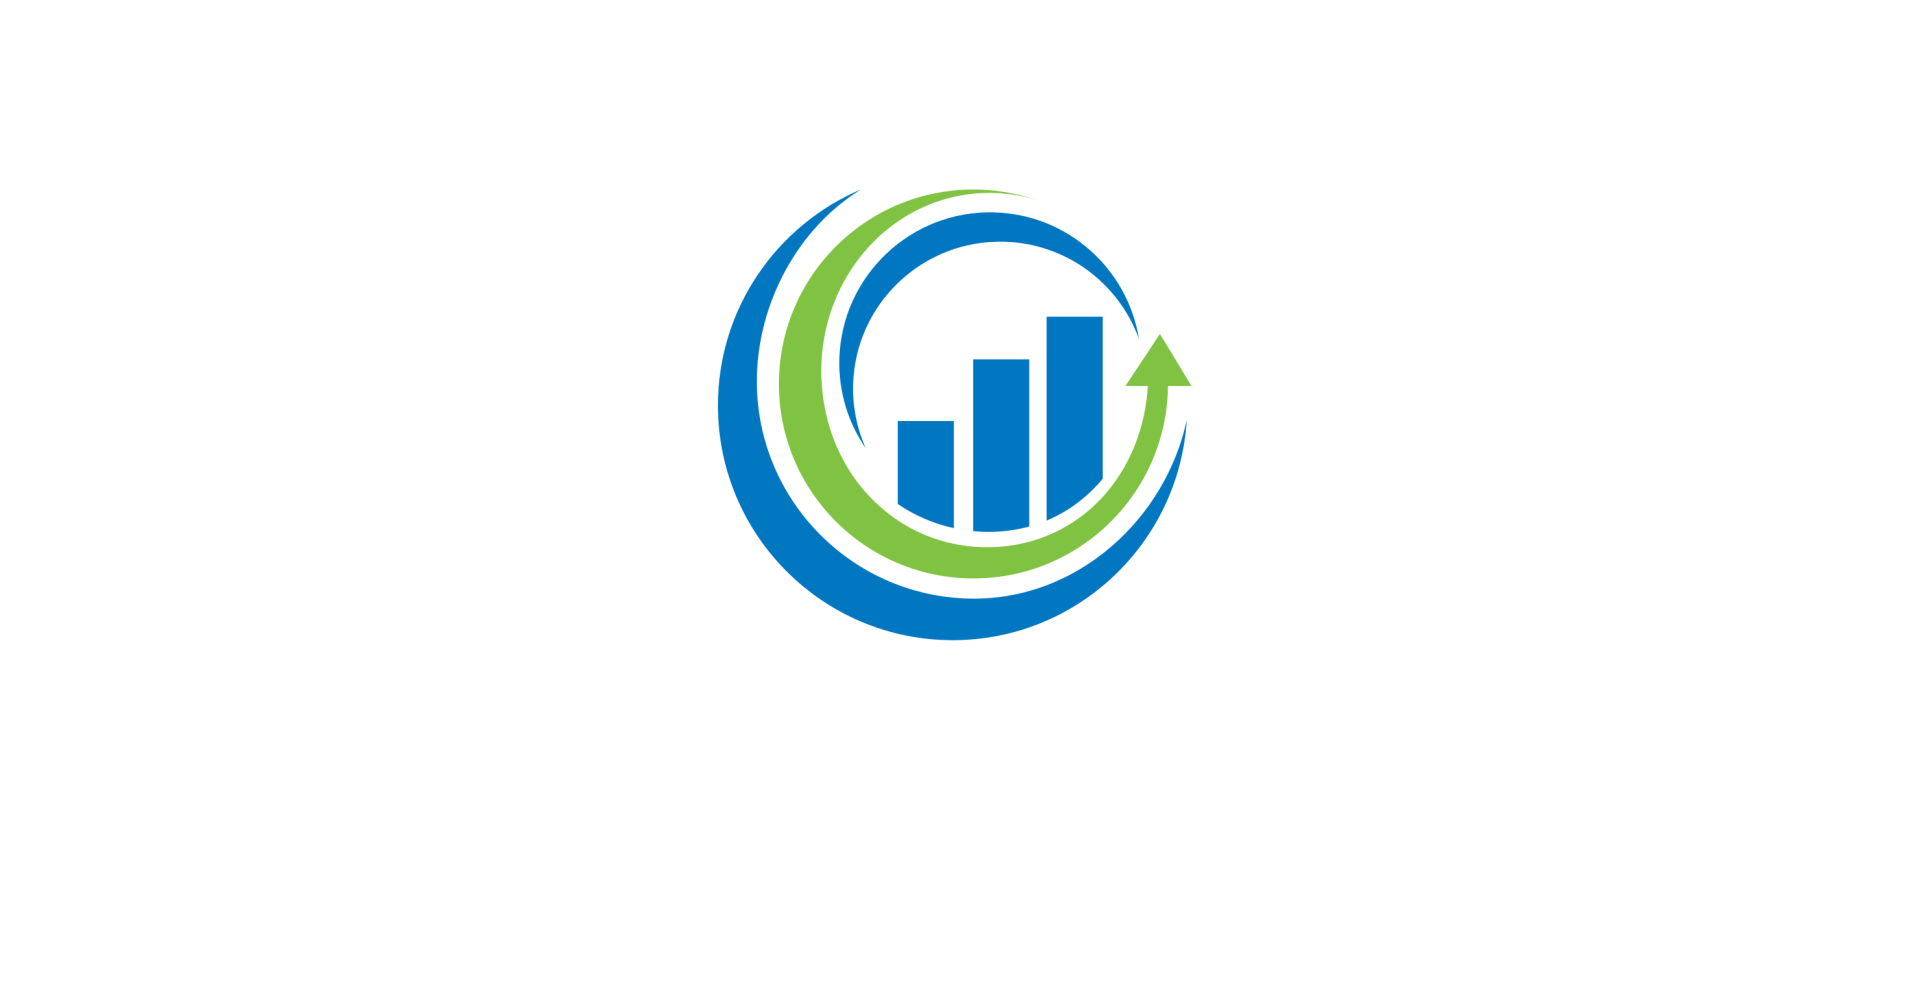 NoLimit Business Solutions transparent logo